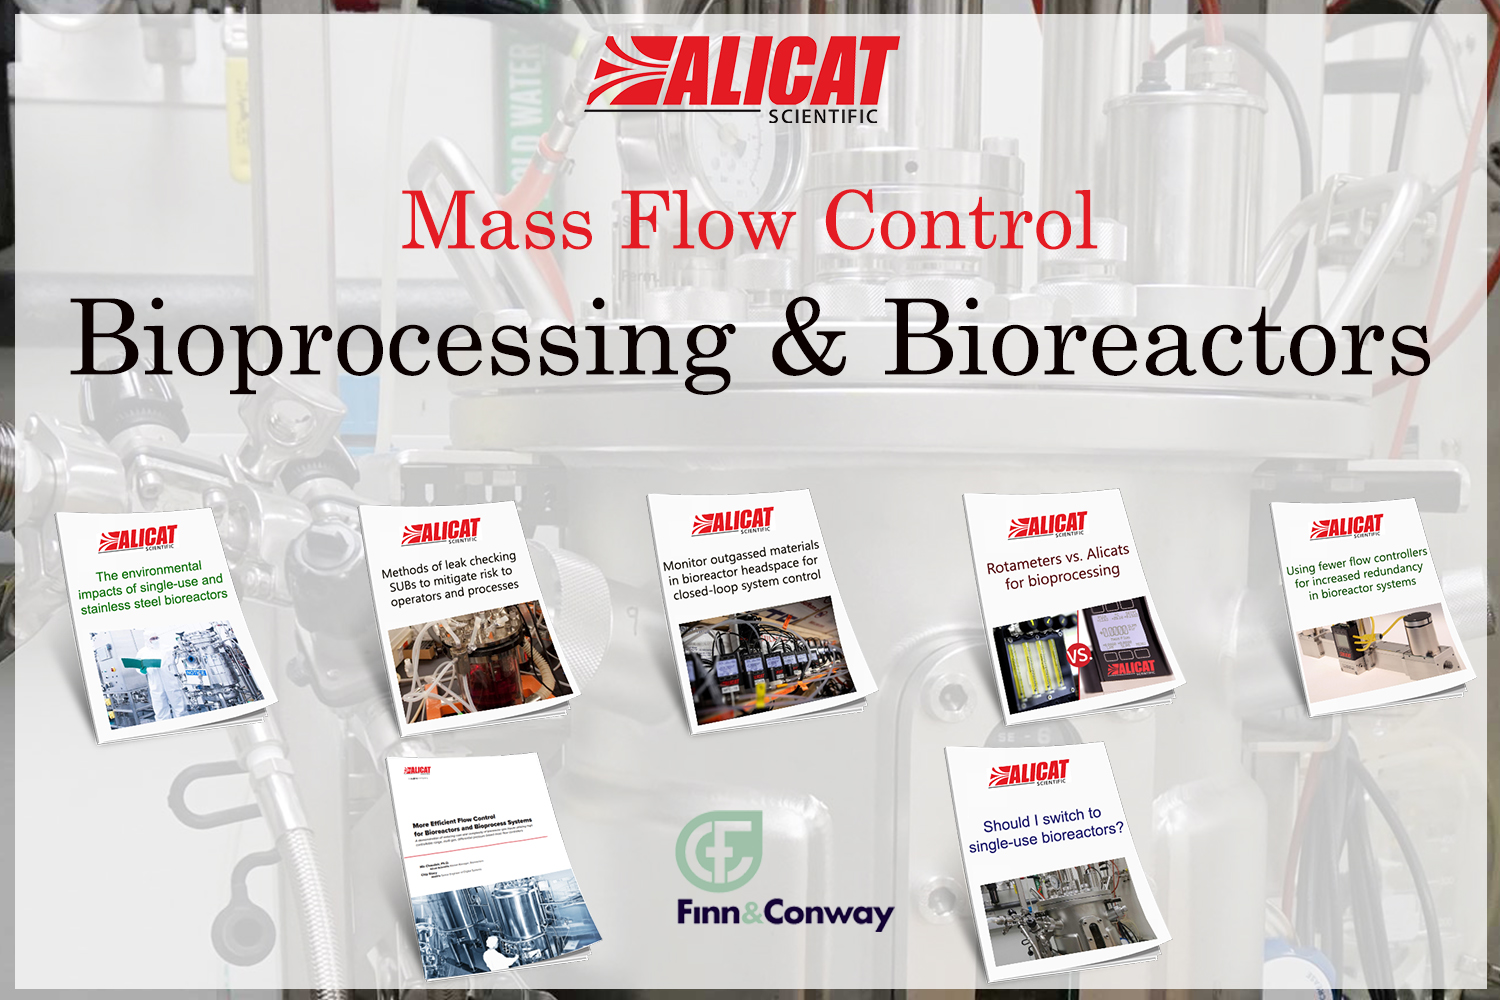 Alicat Scientific - Bioprocessing & Bioreactors